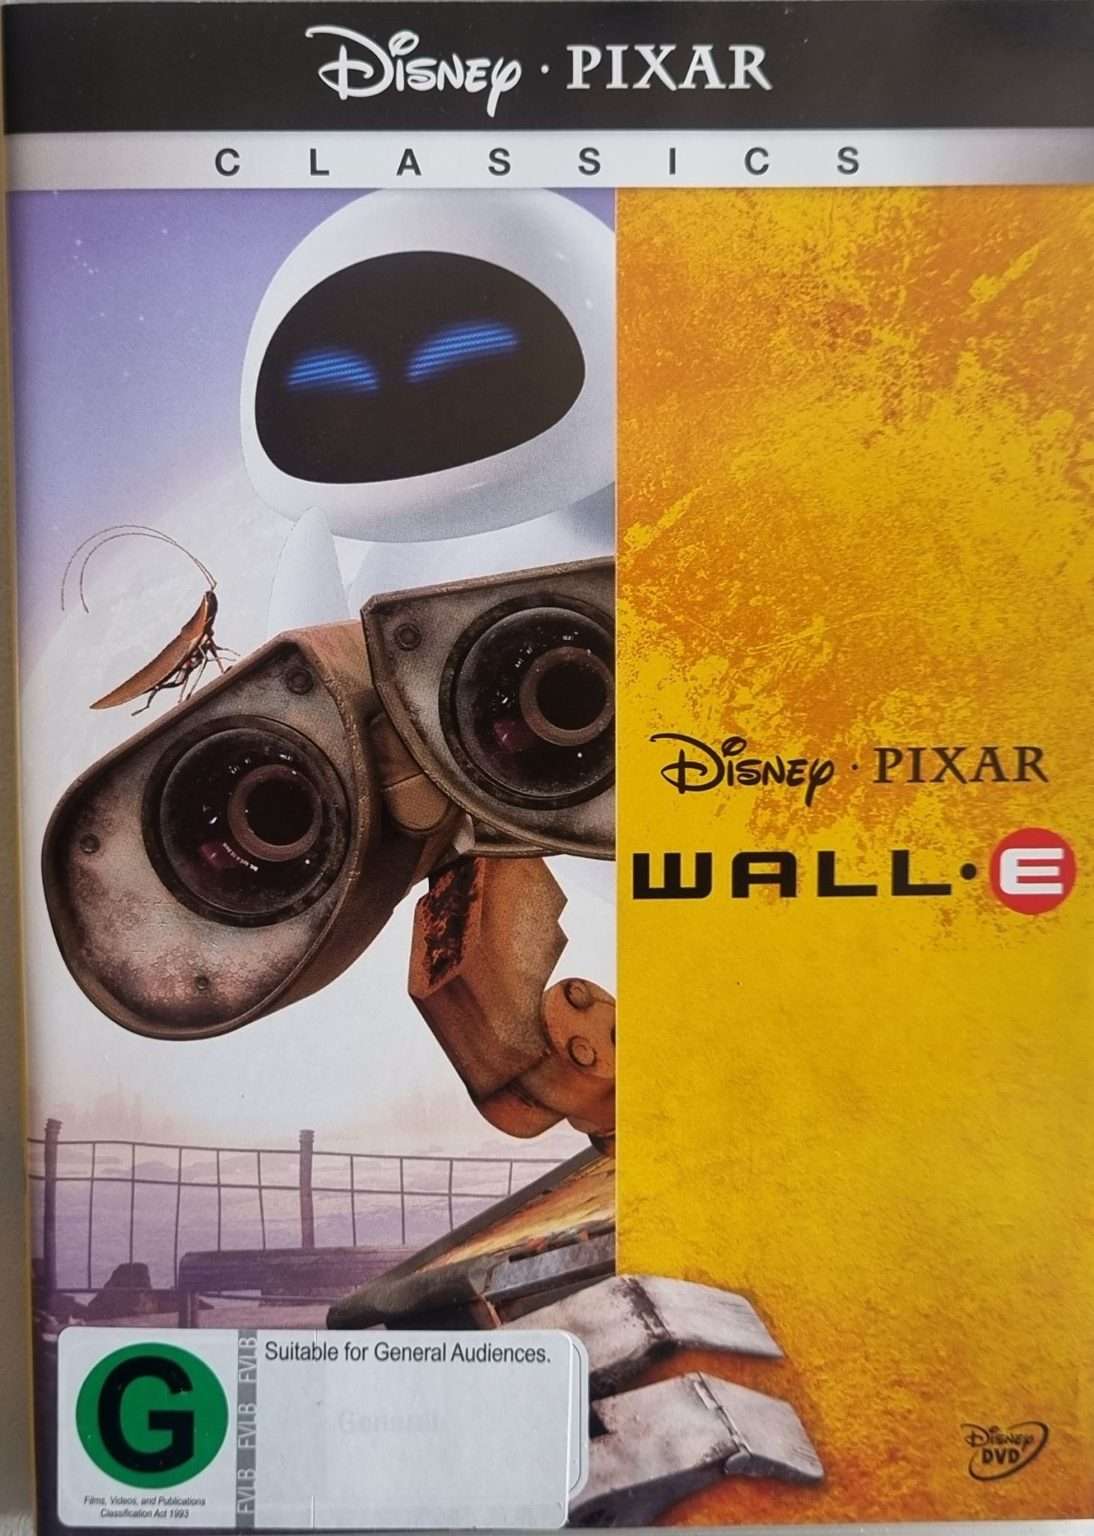 Wall-E